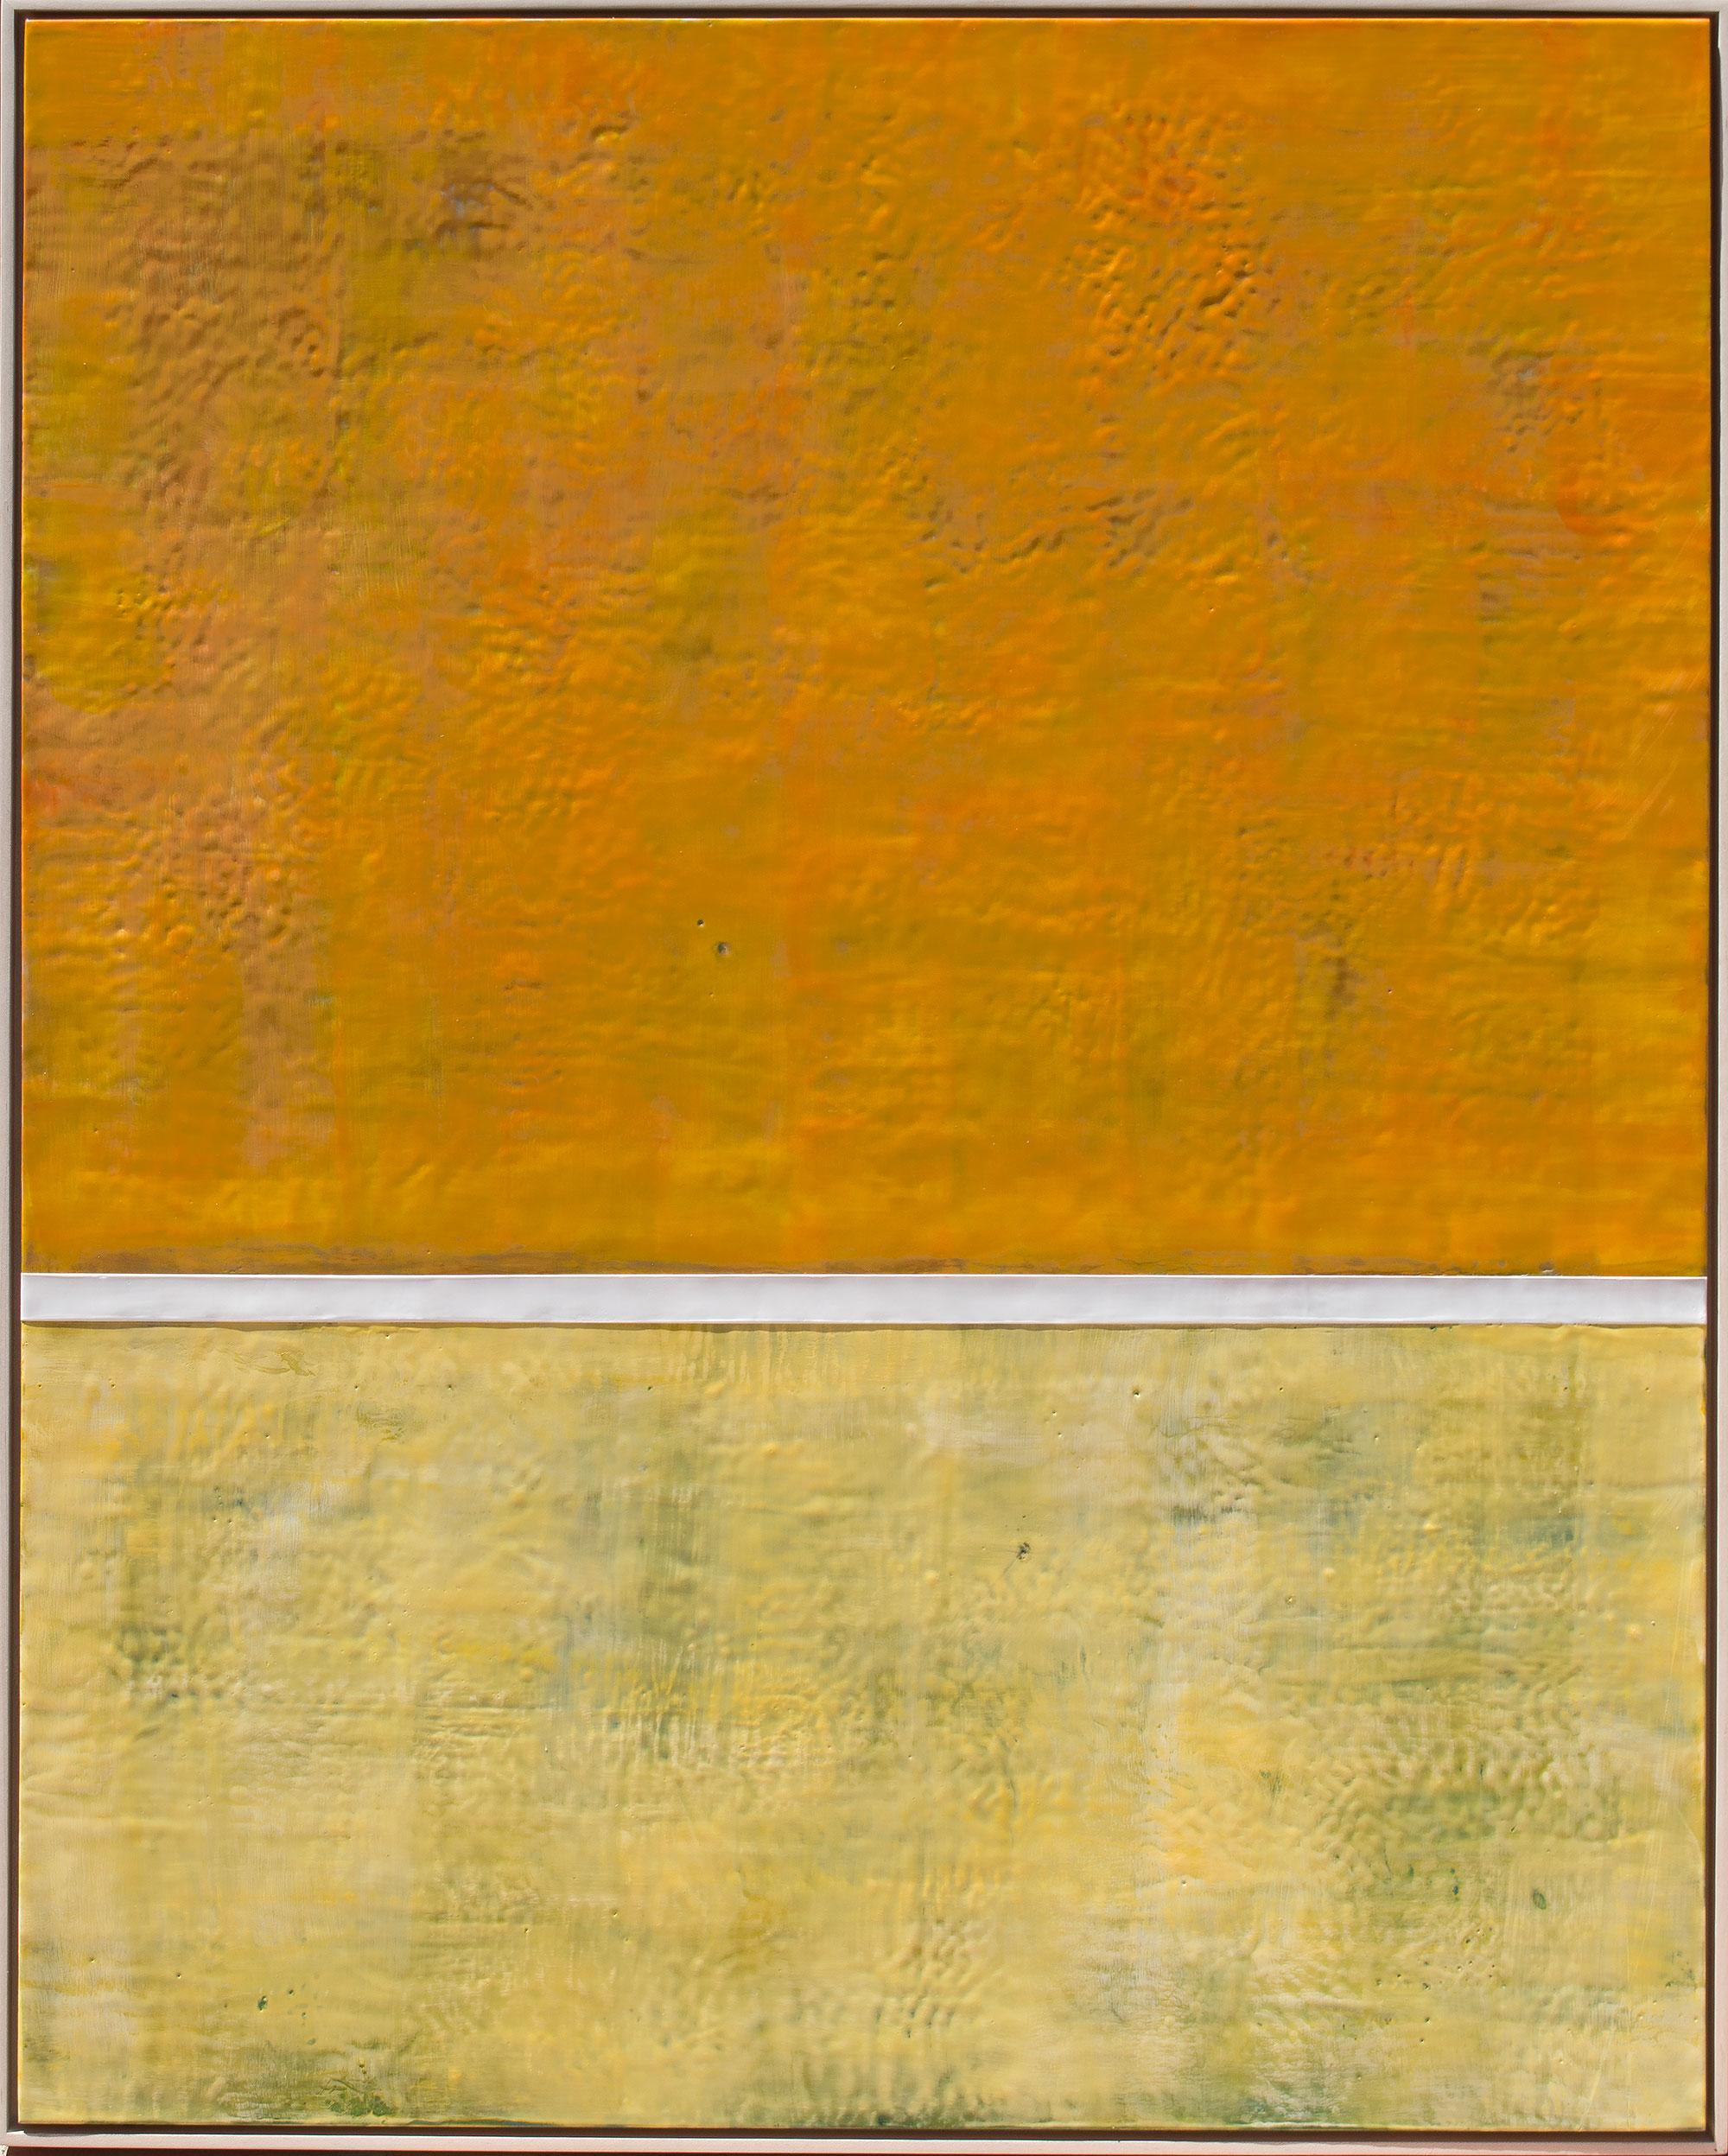 Amy Van Winkle Abstract Painting - Orange Sky